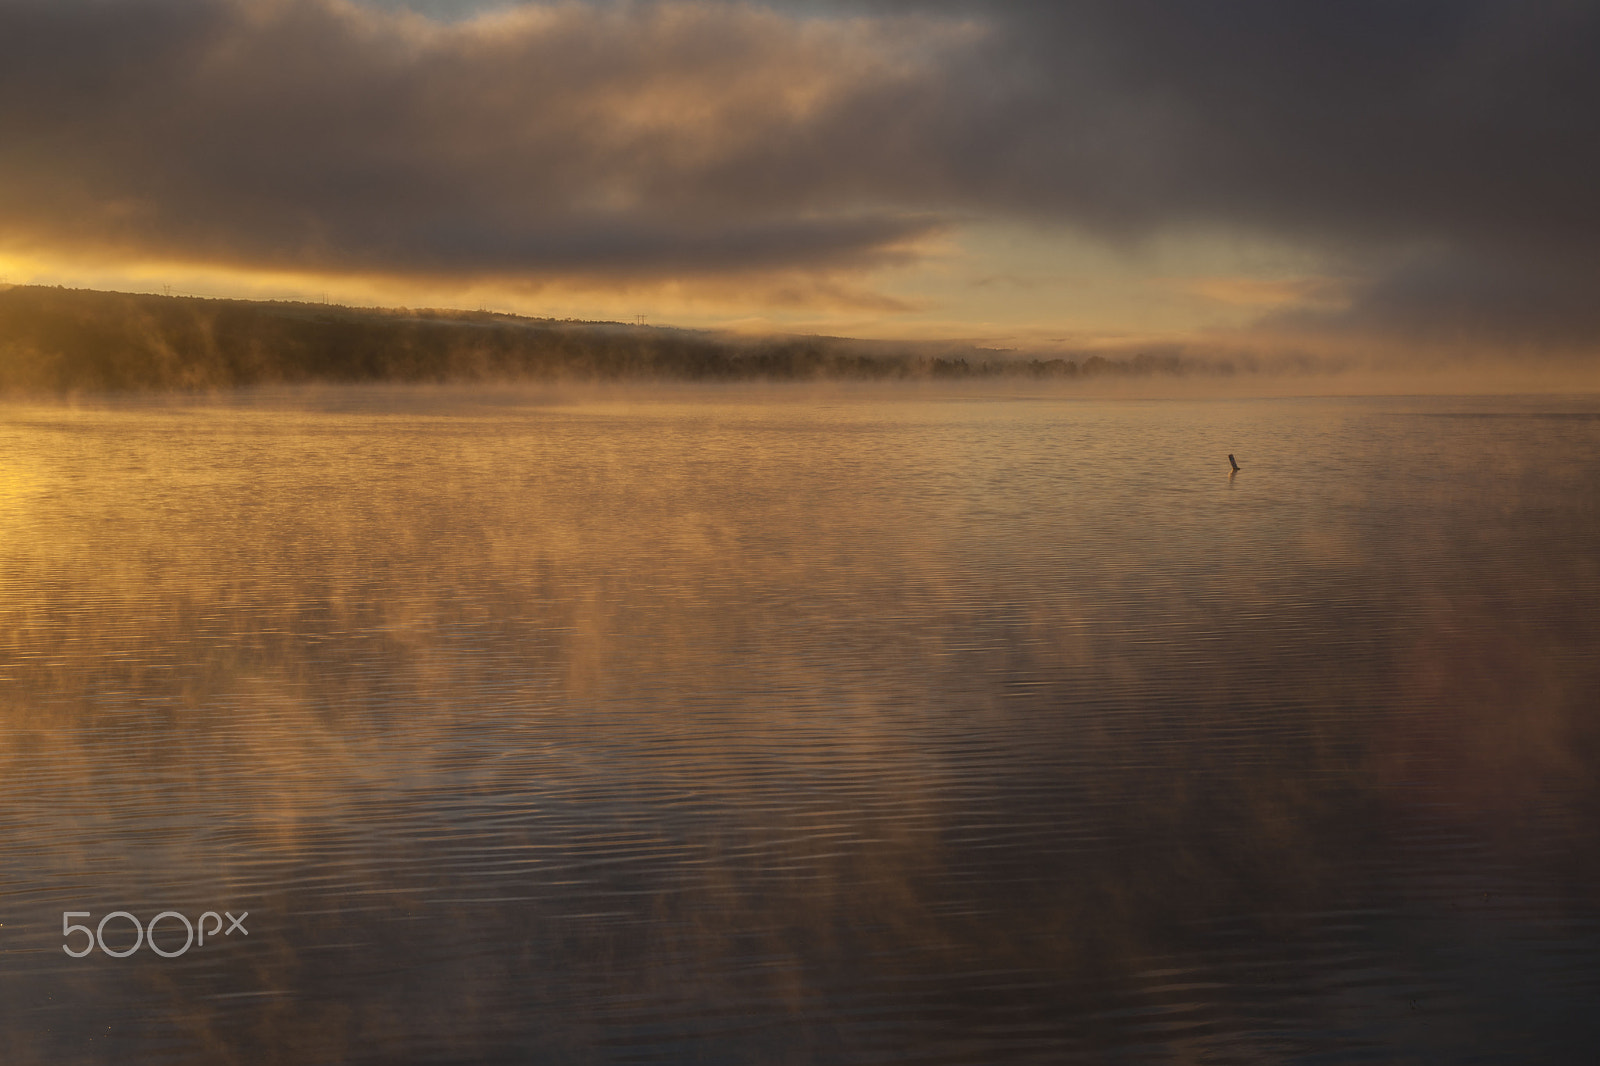 Sony Alpha DSLR-A900 sample photo. Foggy sunrise photography